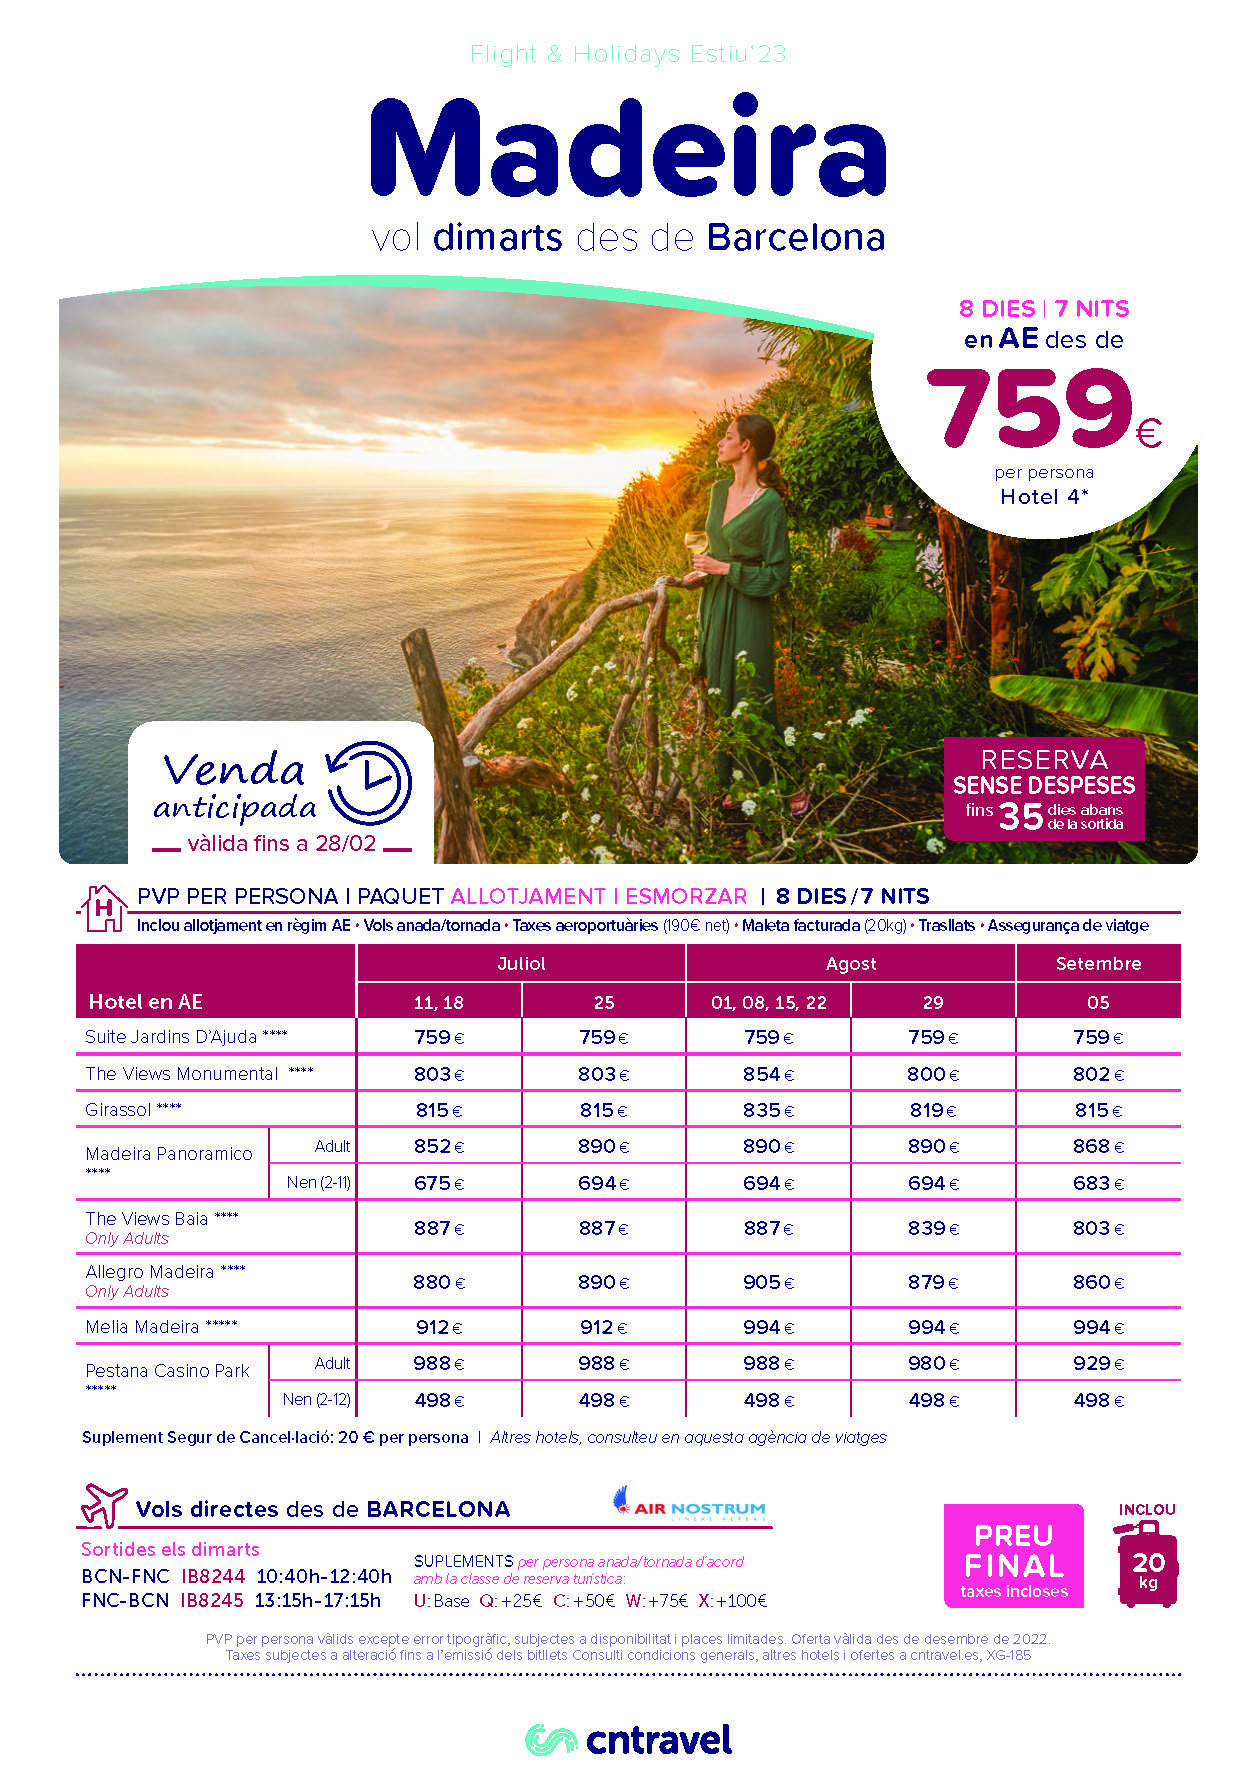 Ofertas CN Travel Vacaciones en Madeira Julio Agosto y Septiembre 2023 8 dias Alojamiento y Desayuno vuelos directos Air Nostrum desde Barcelona